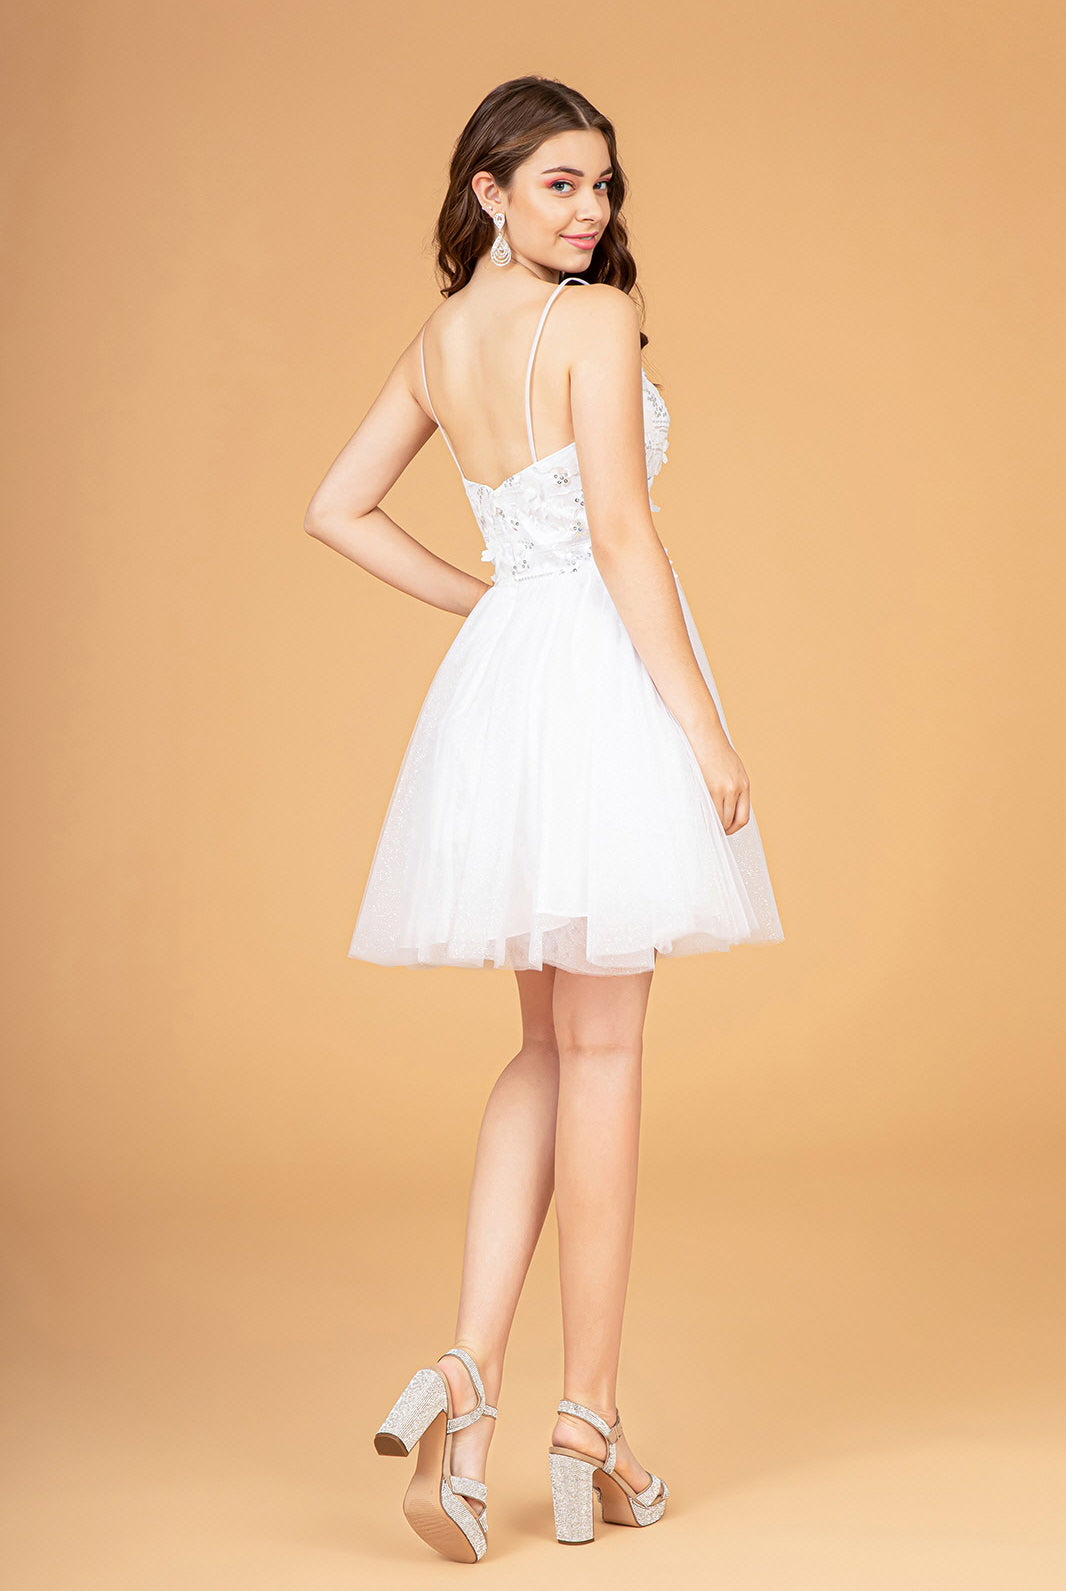 3D Flower Applique Mesh Short Dress Short Mesh Cape GLGS3089-HOMECOMING-smcfashion.com